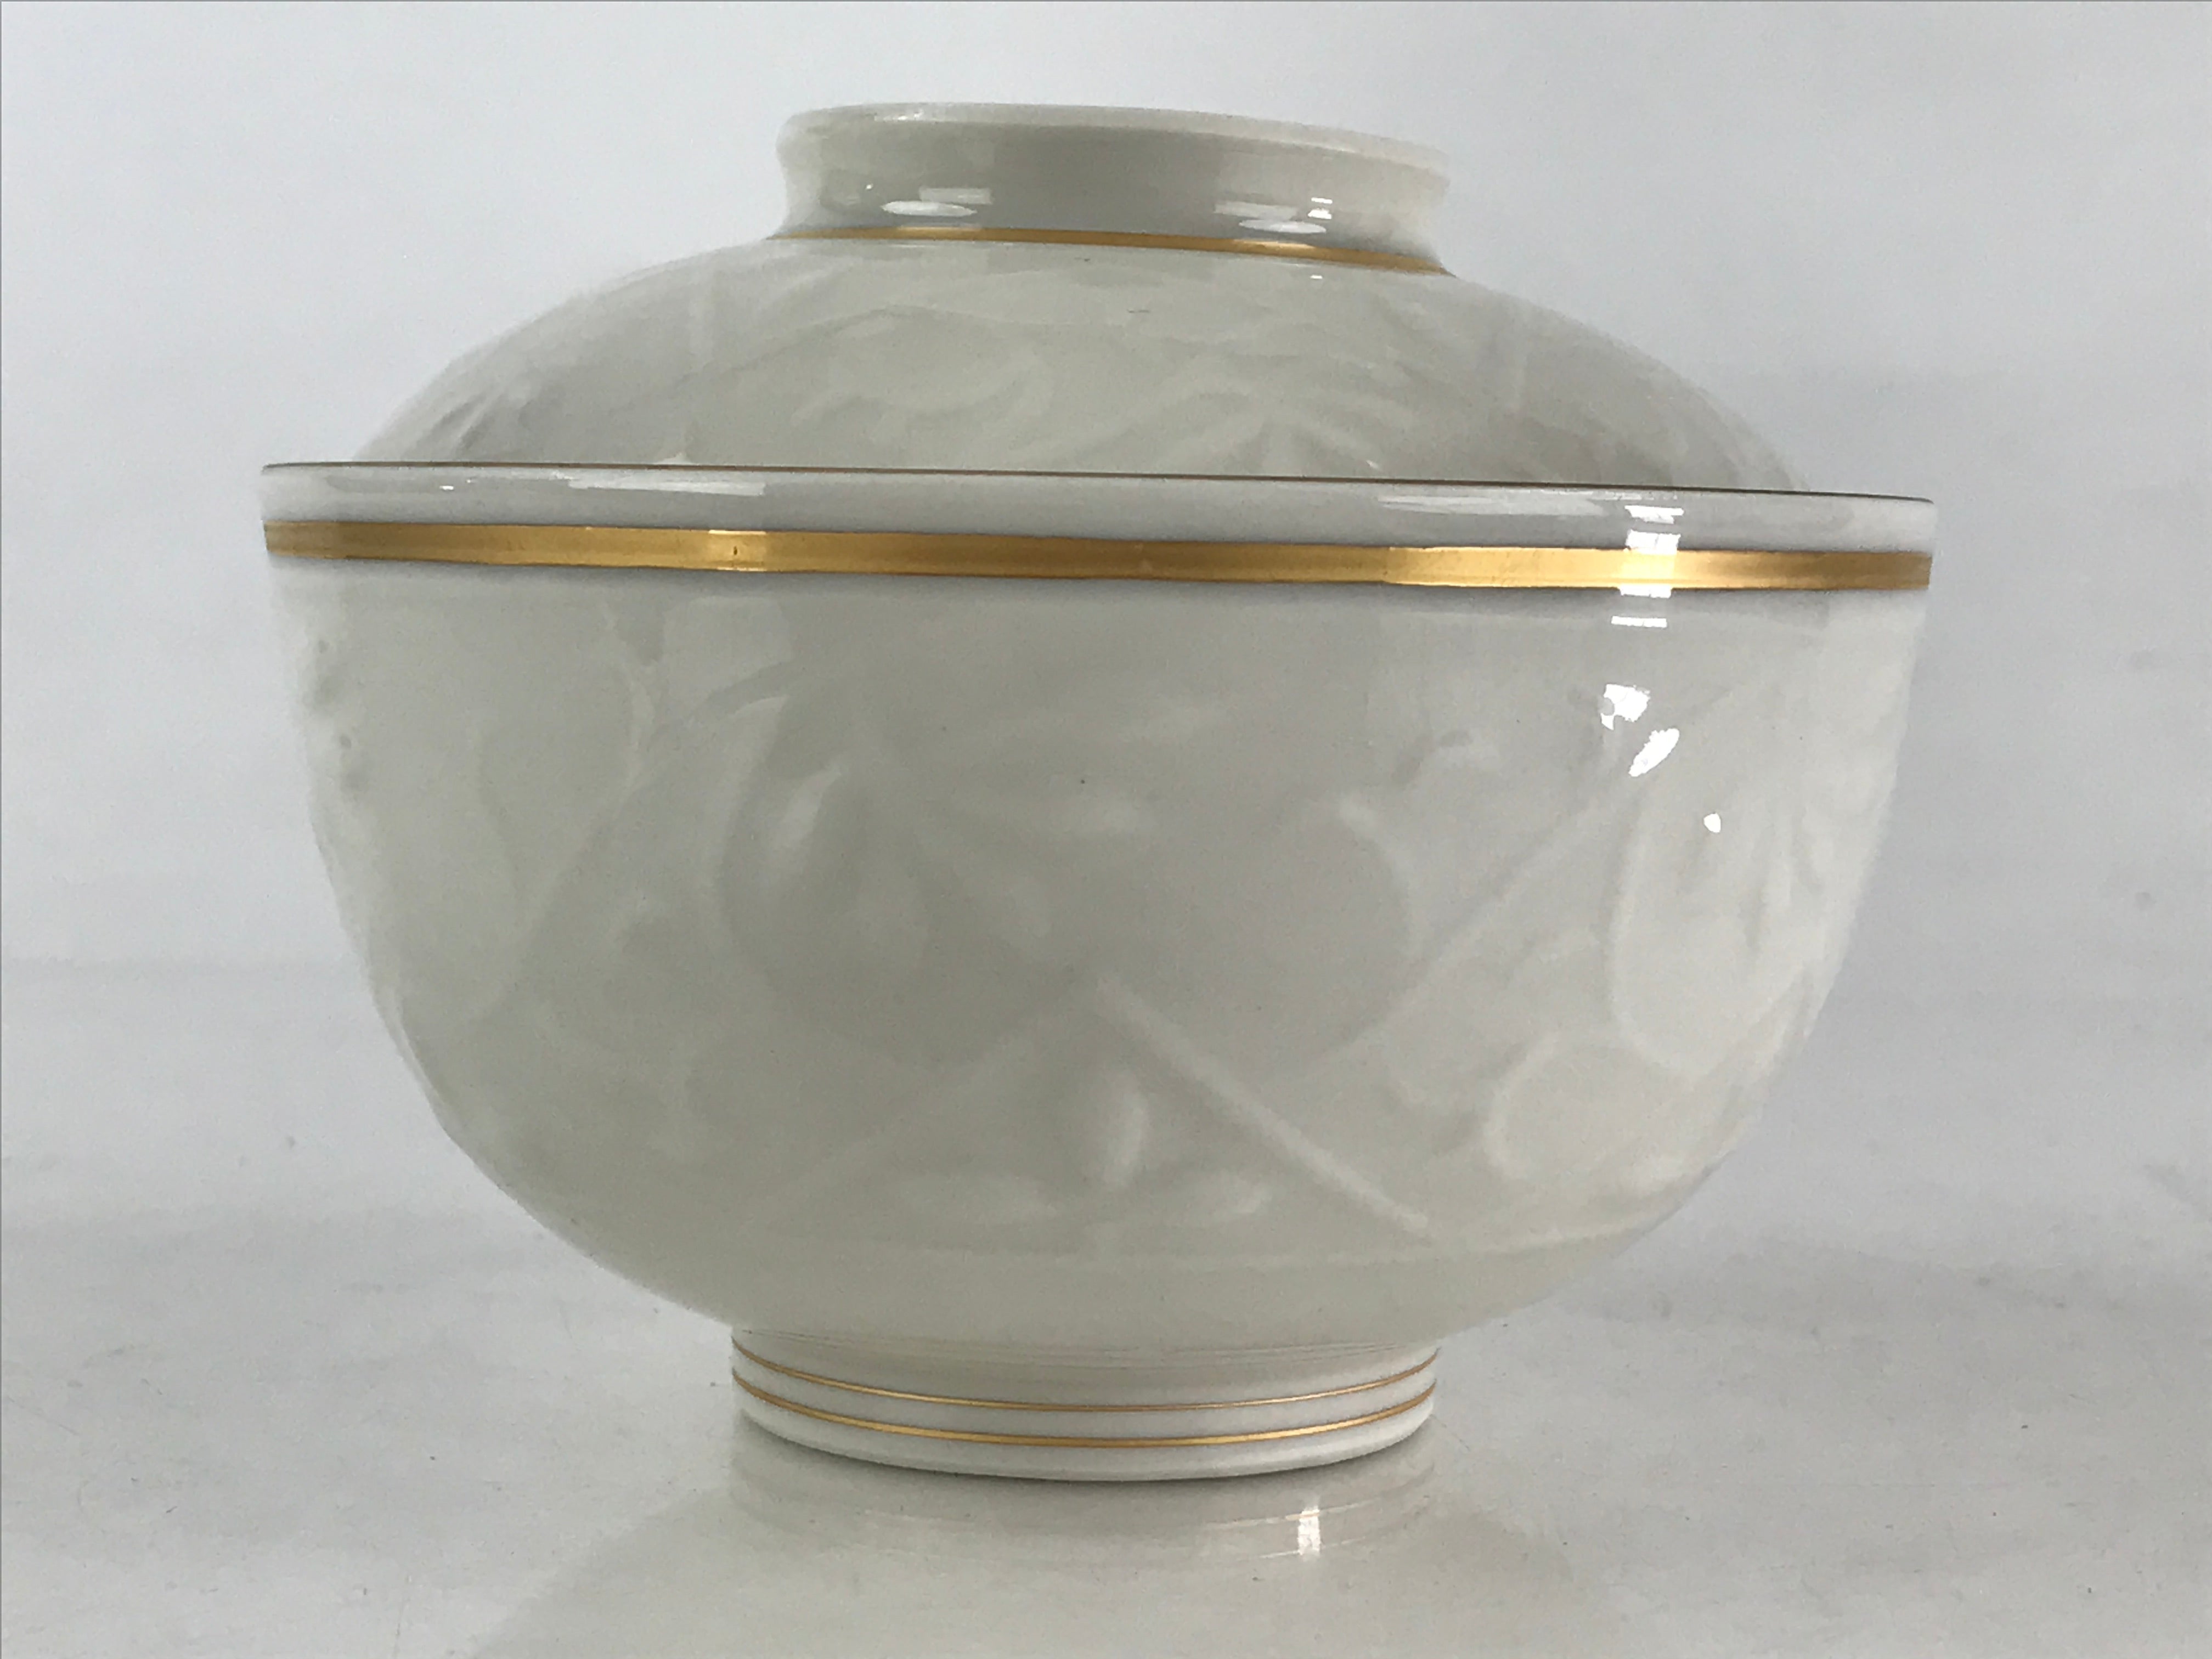 Japanese Ceramic Lidded Rice Bowl White Chawan Vtg Pottery Handmade Flower PY278